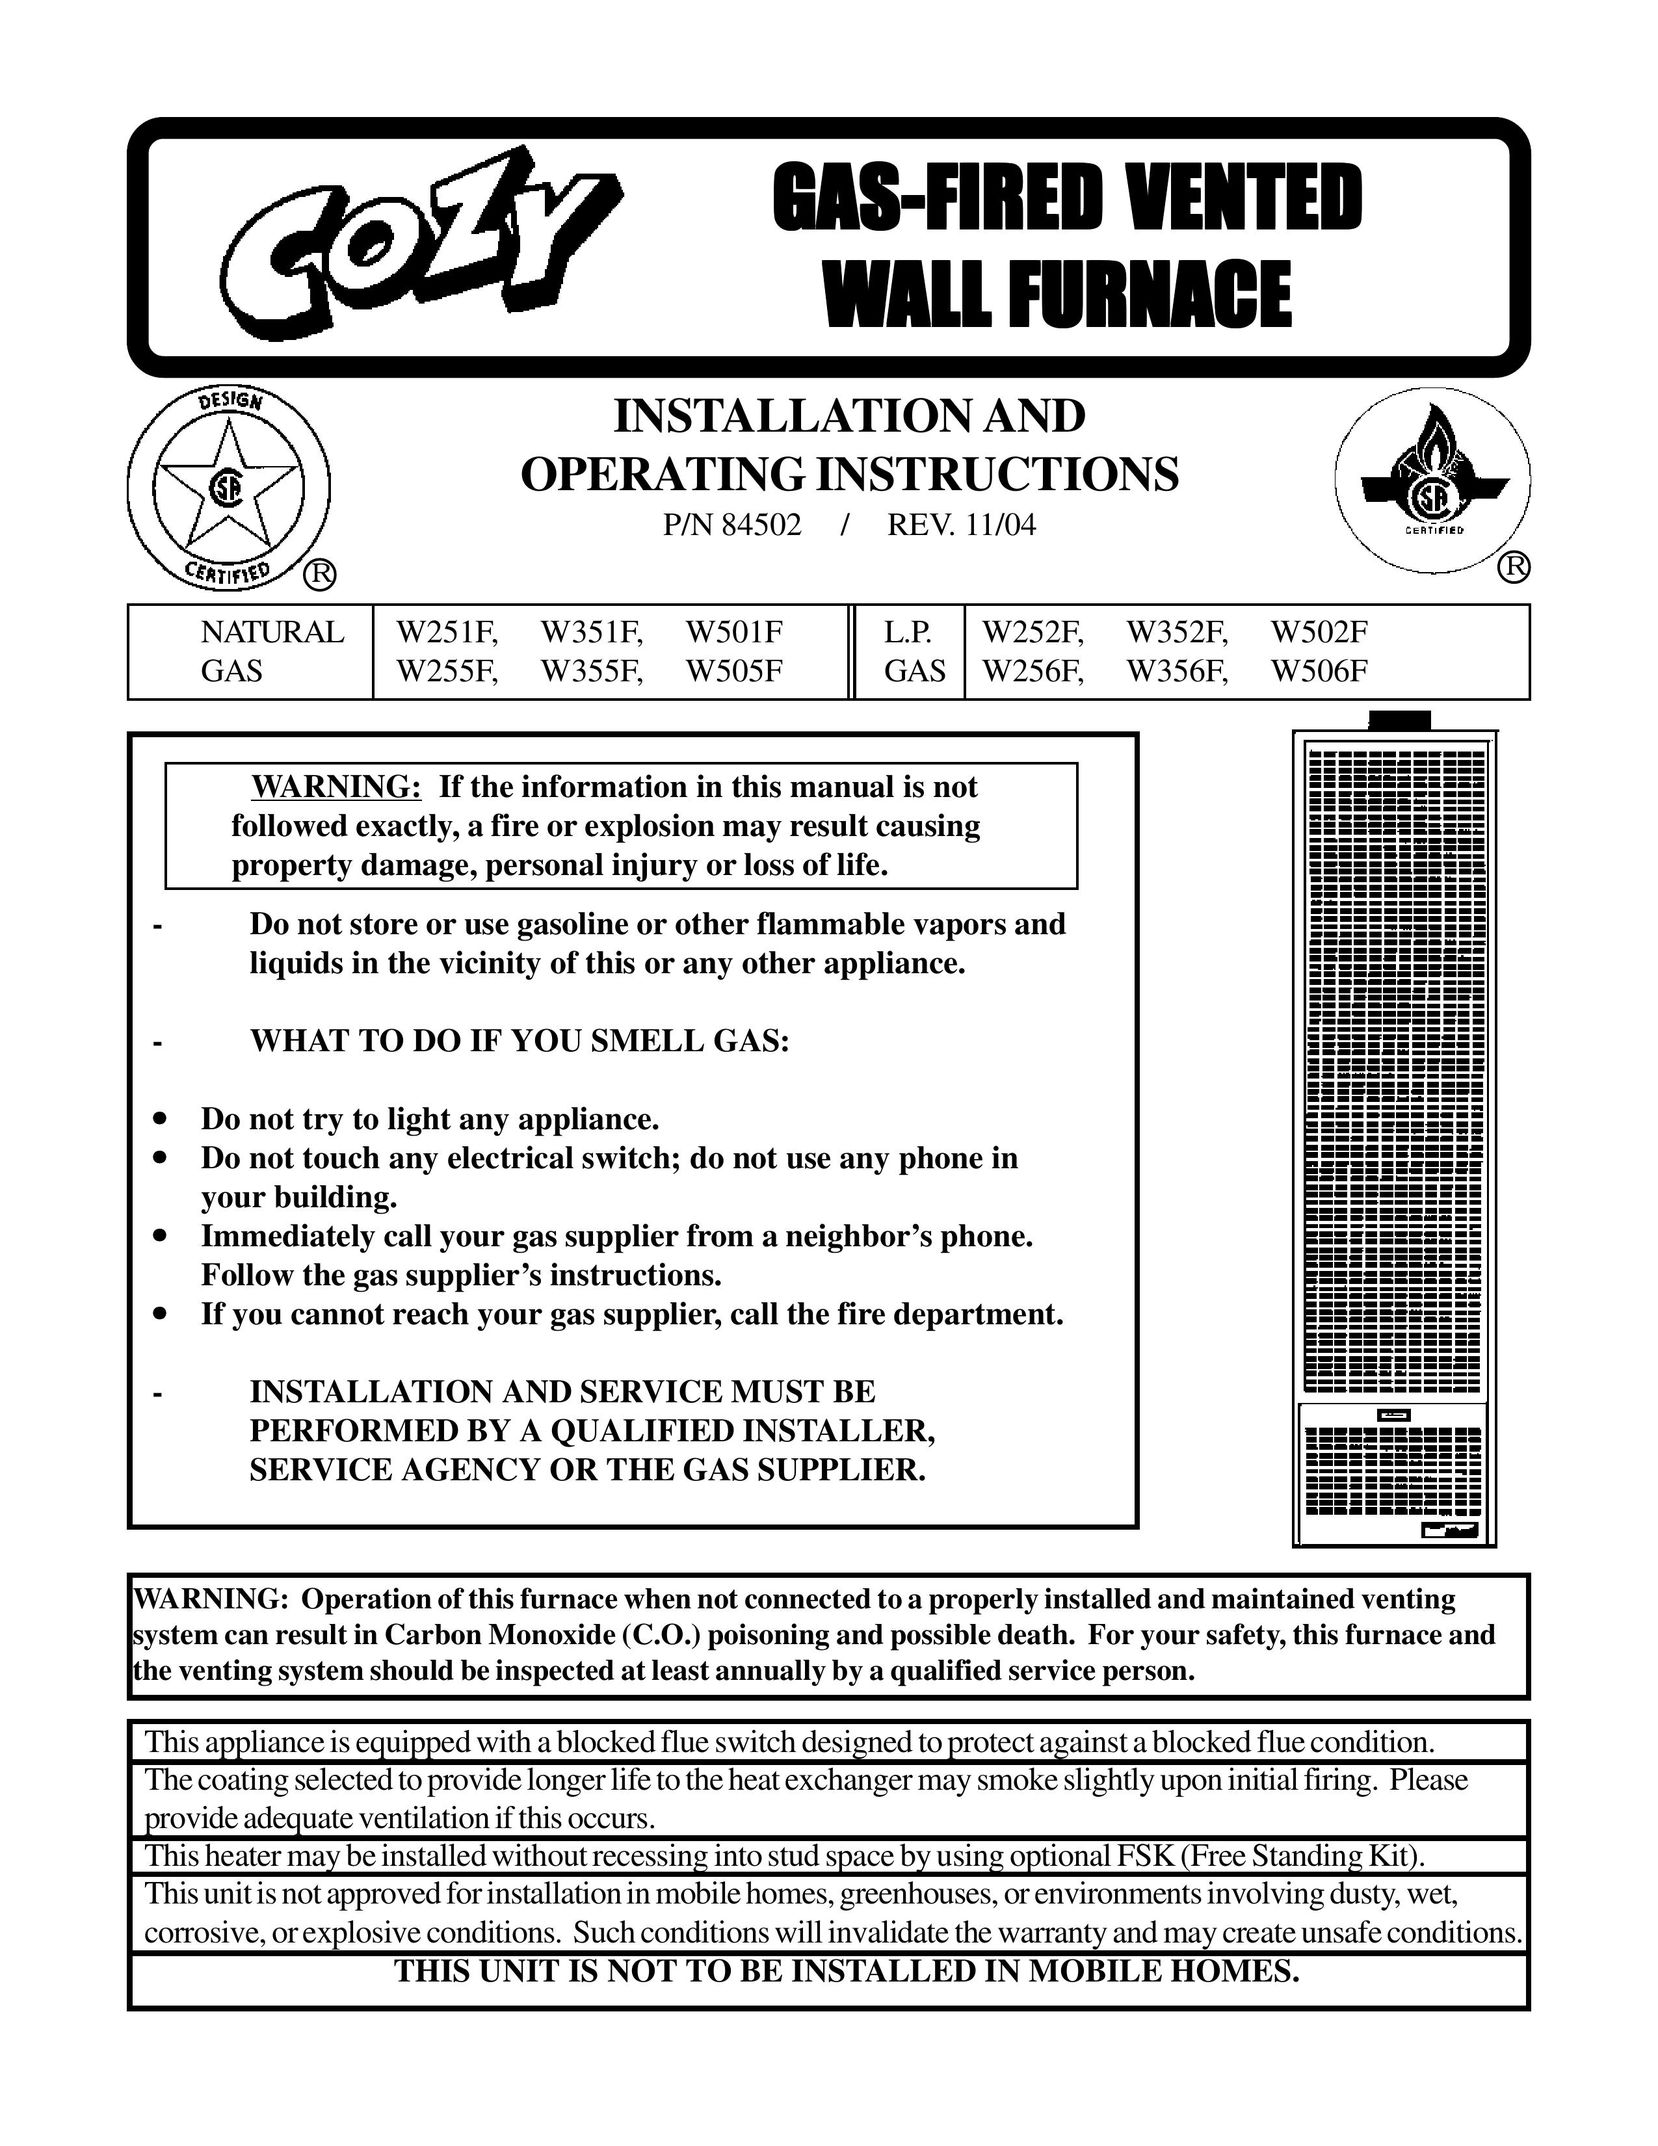 Louisville Tin and Stove W502F W255F Furnace User Manual